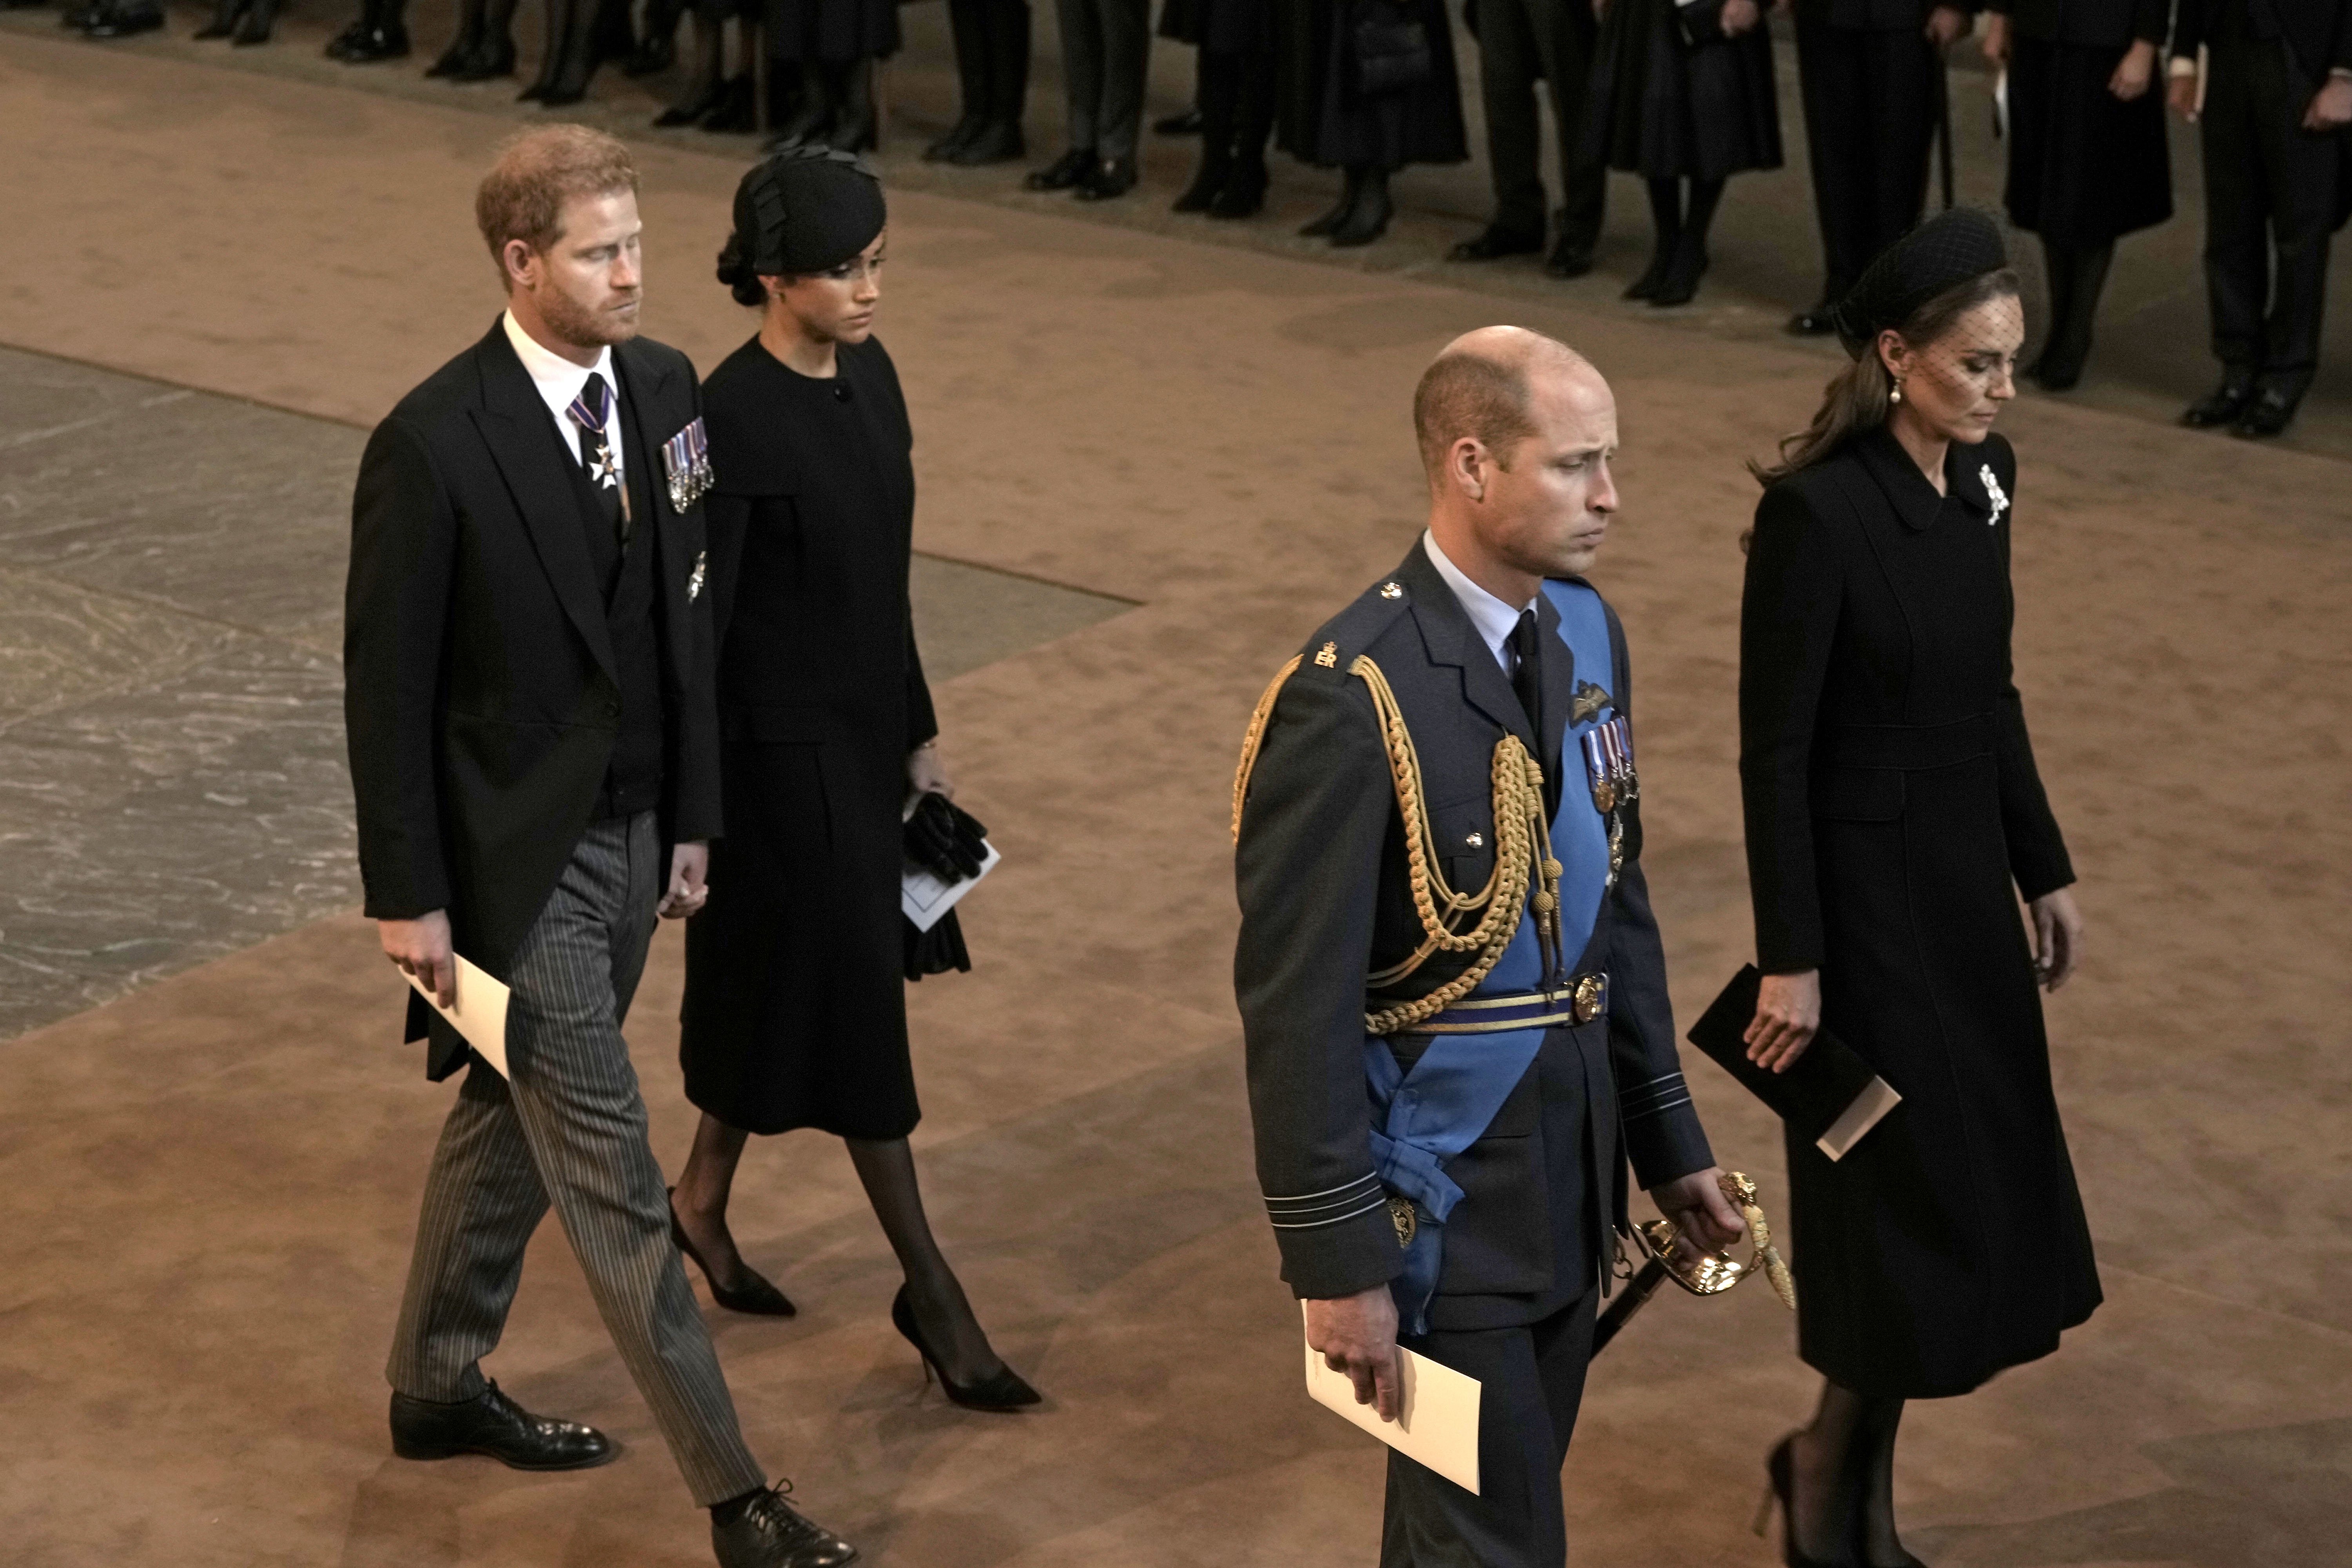 El príncipe Harry,  duque de Sussex, Meghan, duquesa de Sussex, el príncipe William, príncipe de Gales y Catherine, princesa de Gales, saliendo de Westminster Hall, el 14 de septiembre de 2022 en Londres, Reino Unido. | Foto: Getty Images